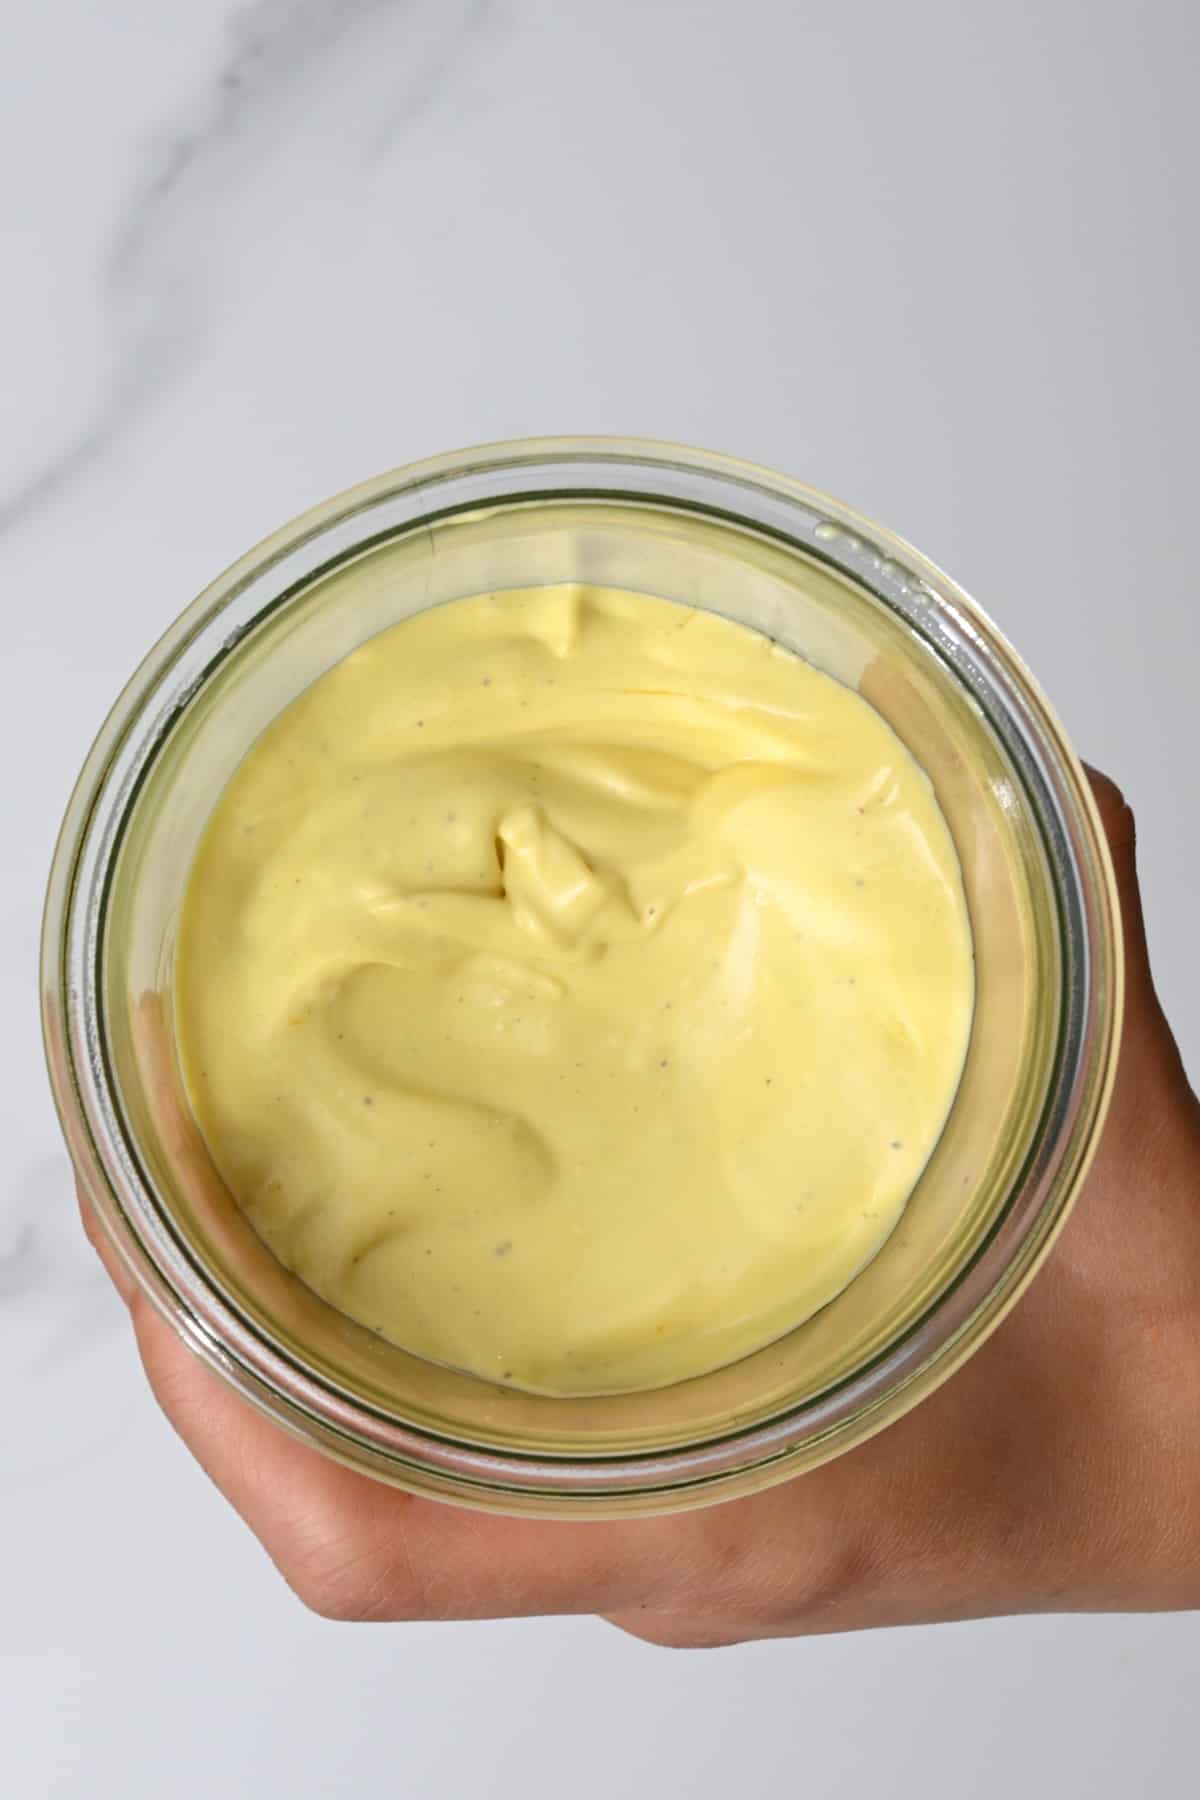 Homemade garlic mayo in a jar